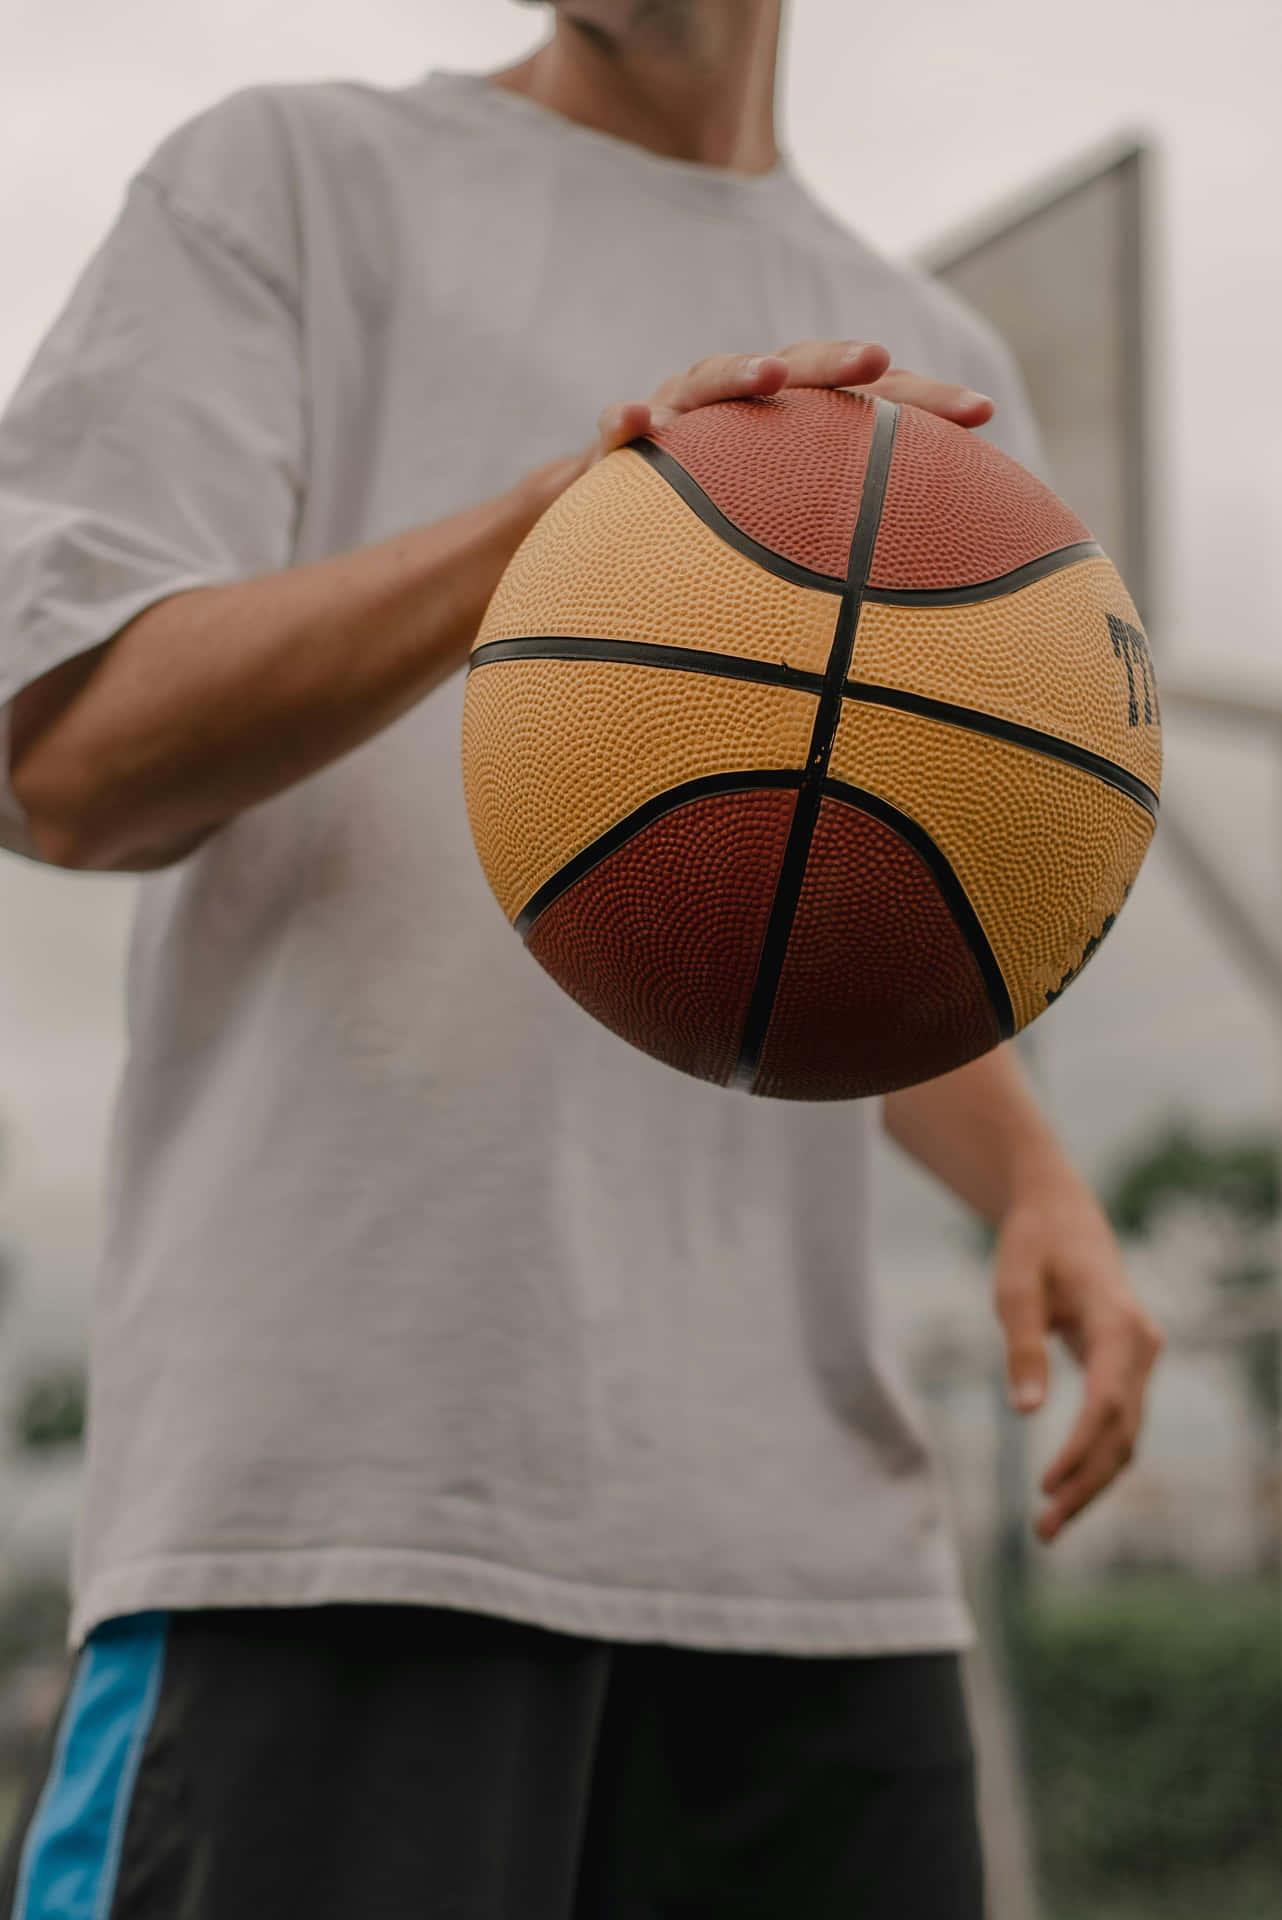 Basketball Player Holding Ball Court Wallpaper